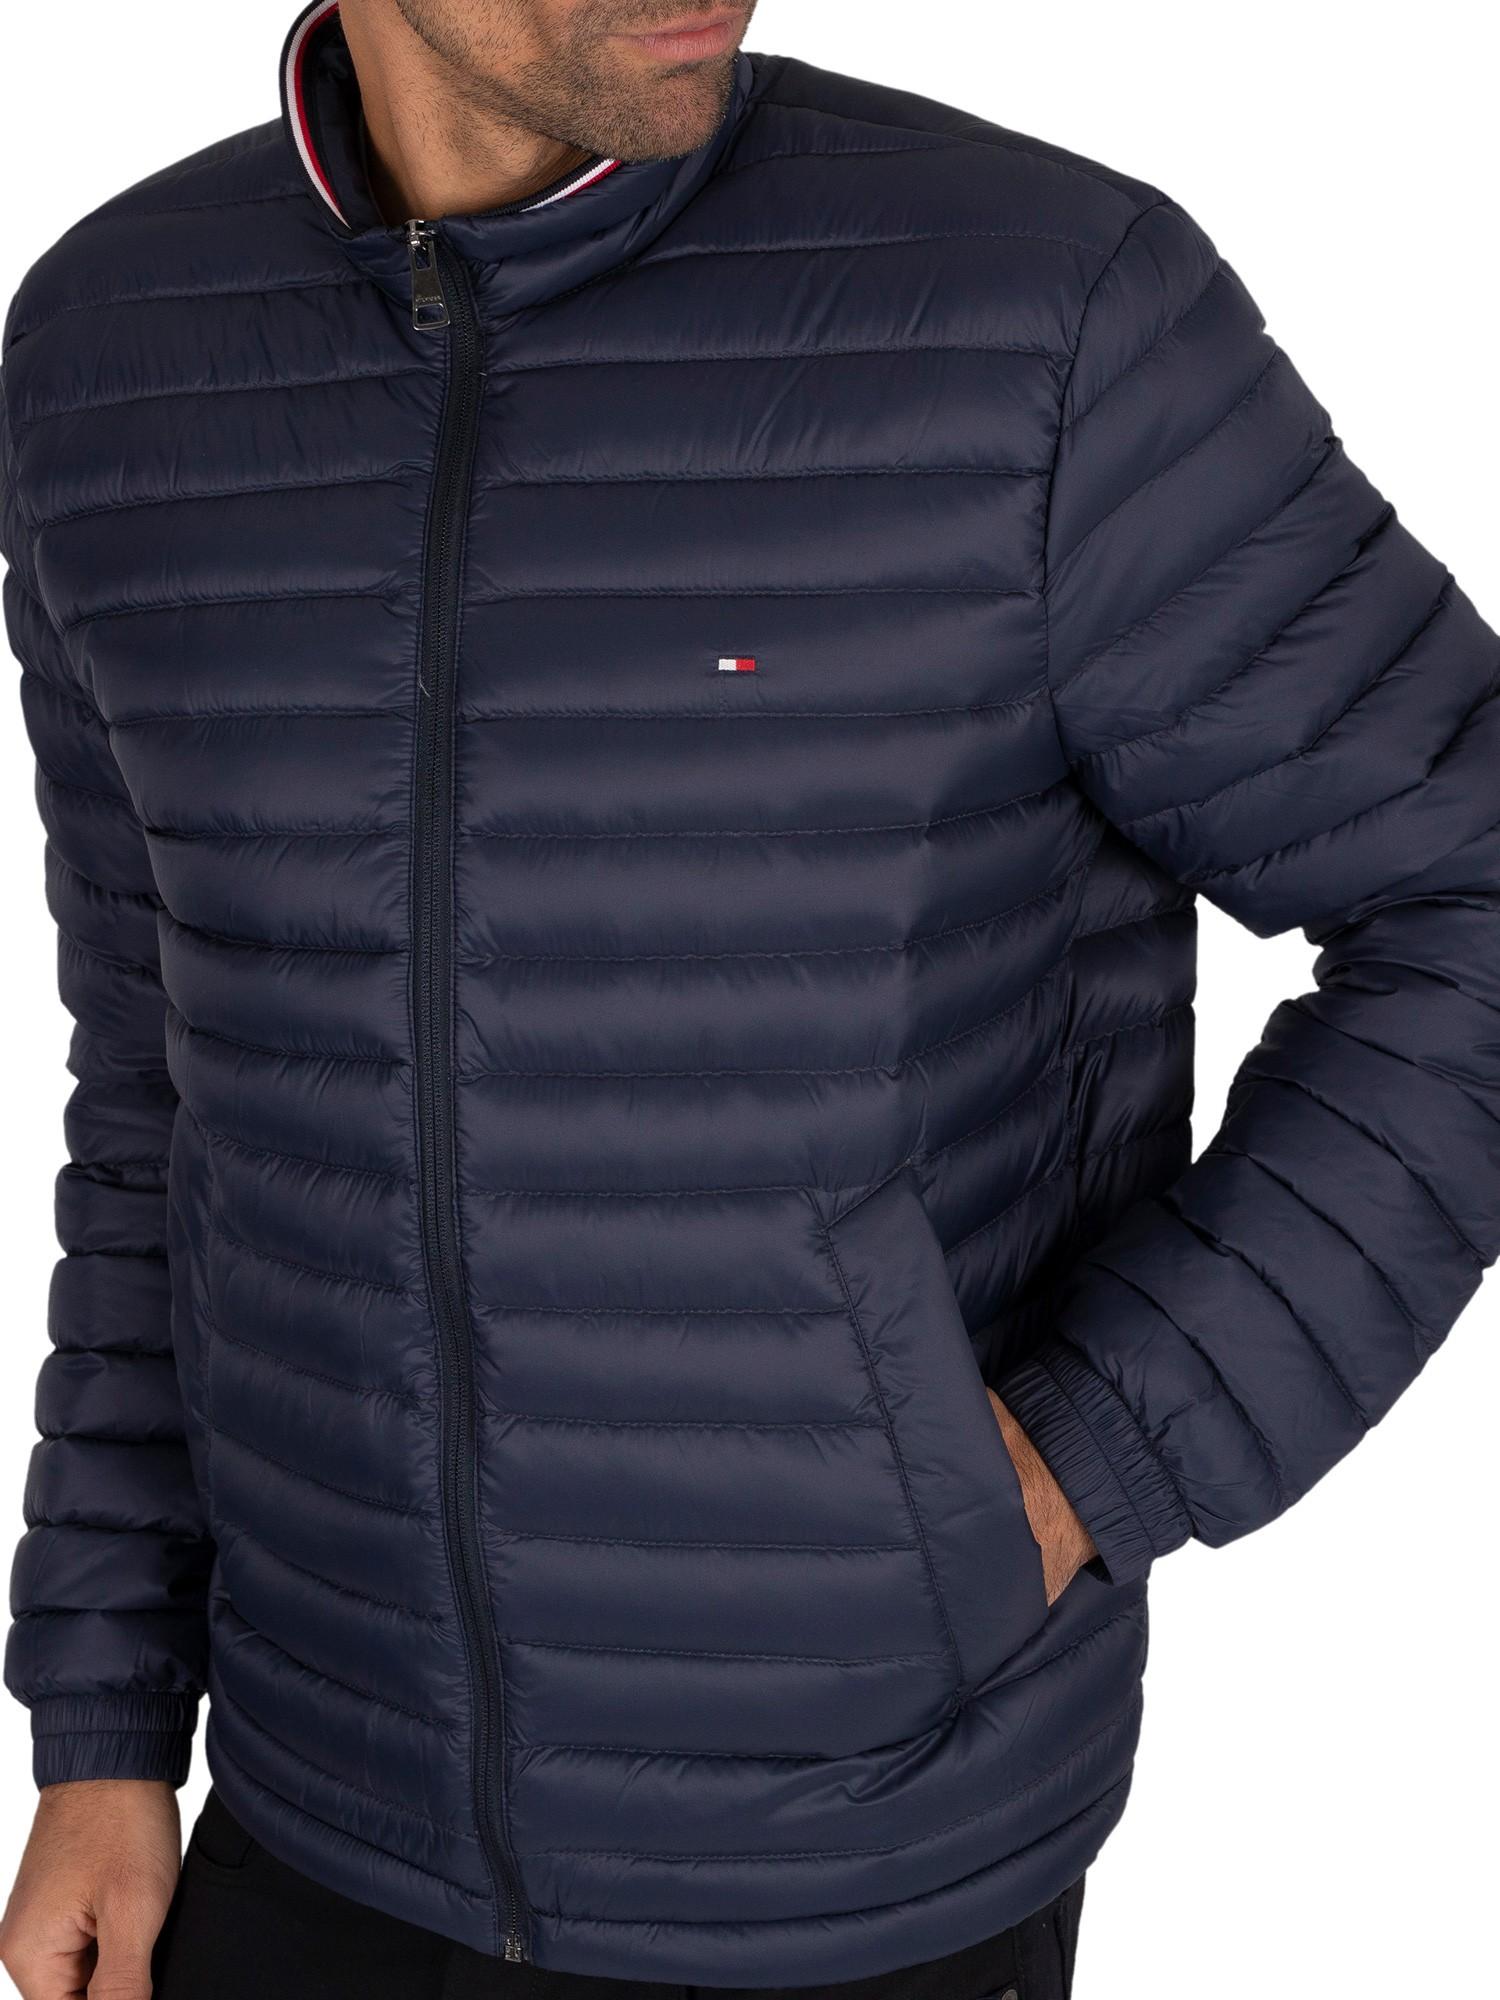 tommy hilfiger packable jacket men's for Sale OFF 76%